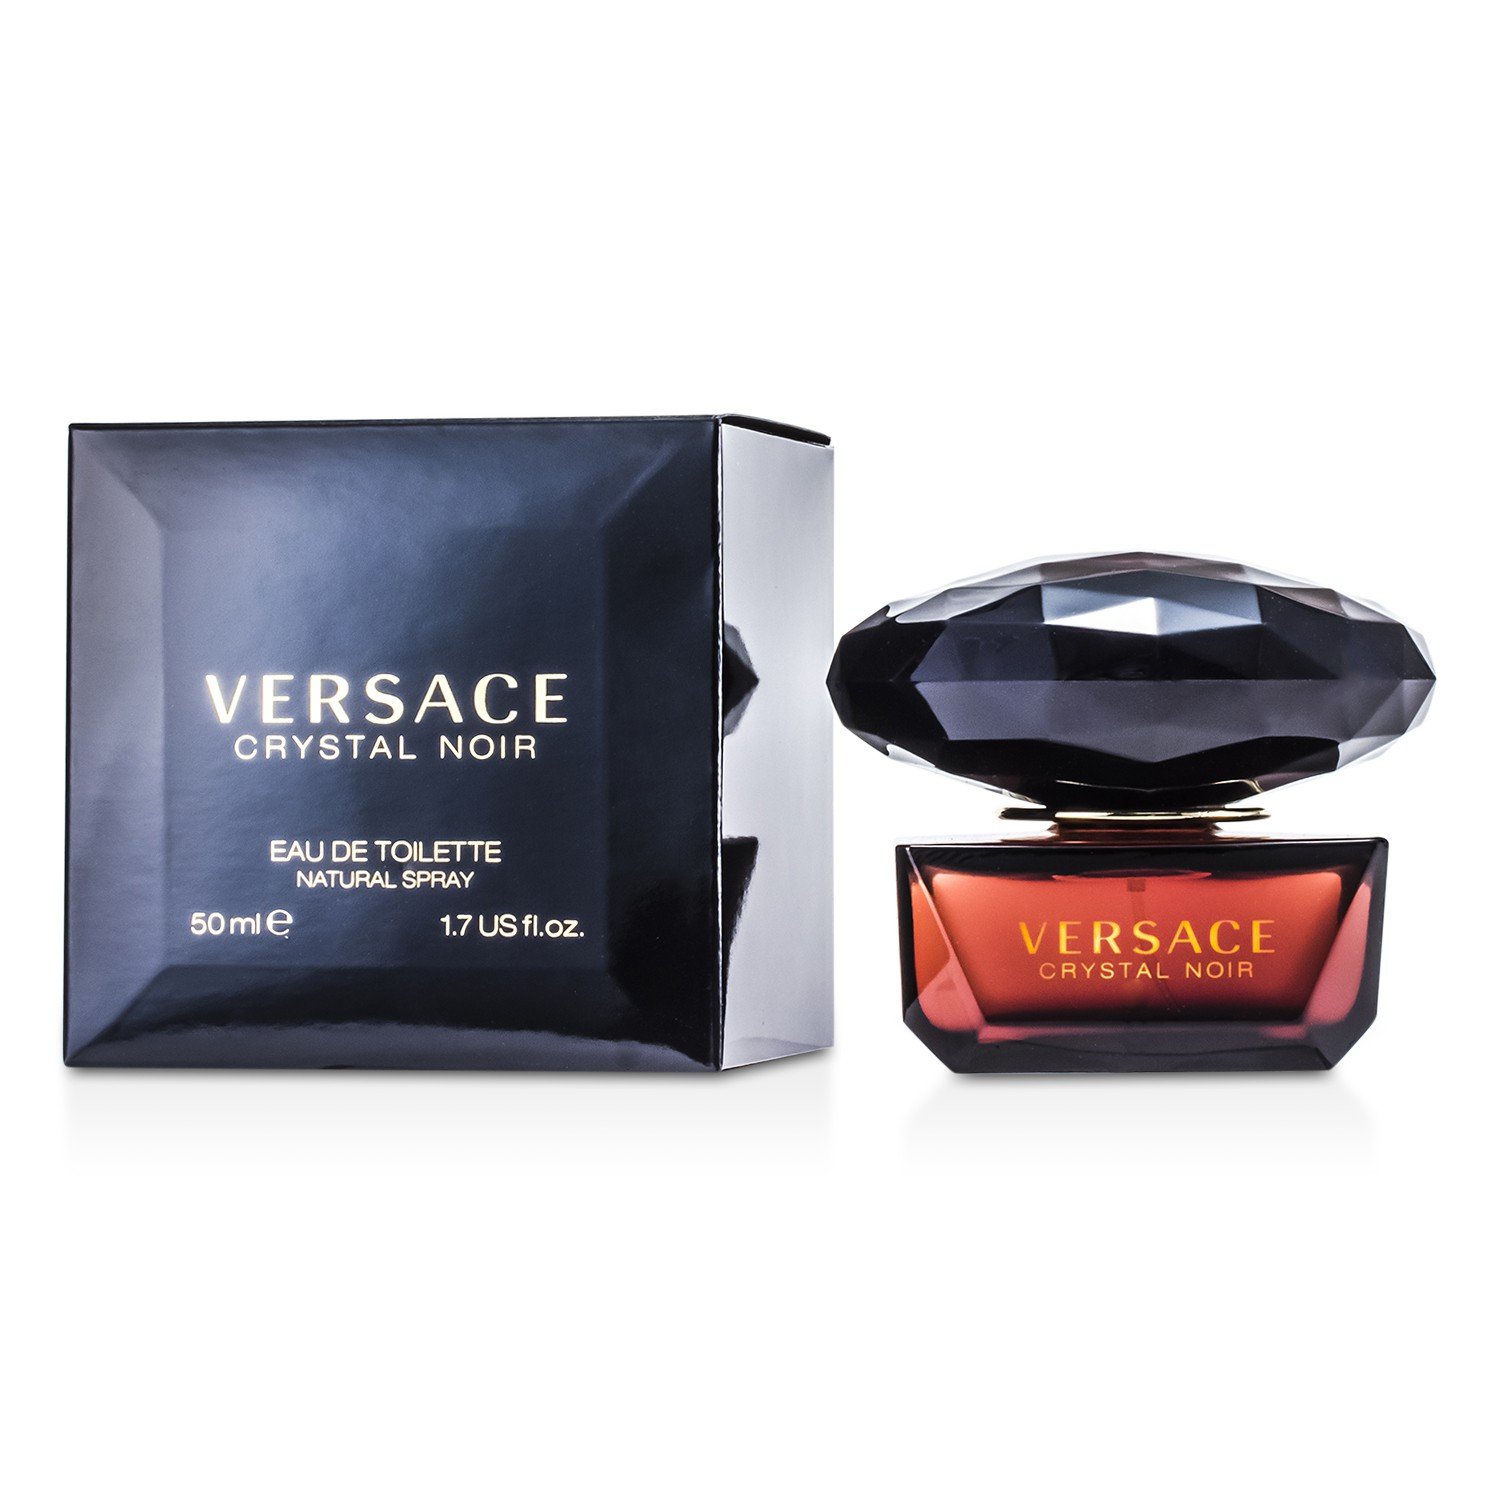 Photos - Women's Fragrance Versace Crystal Noir Eau de Toilette - 1.7oz 